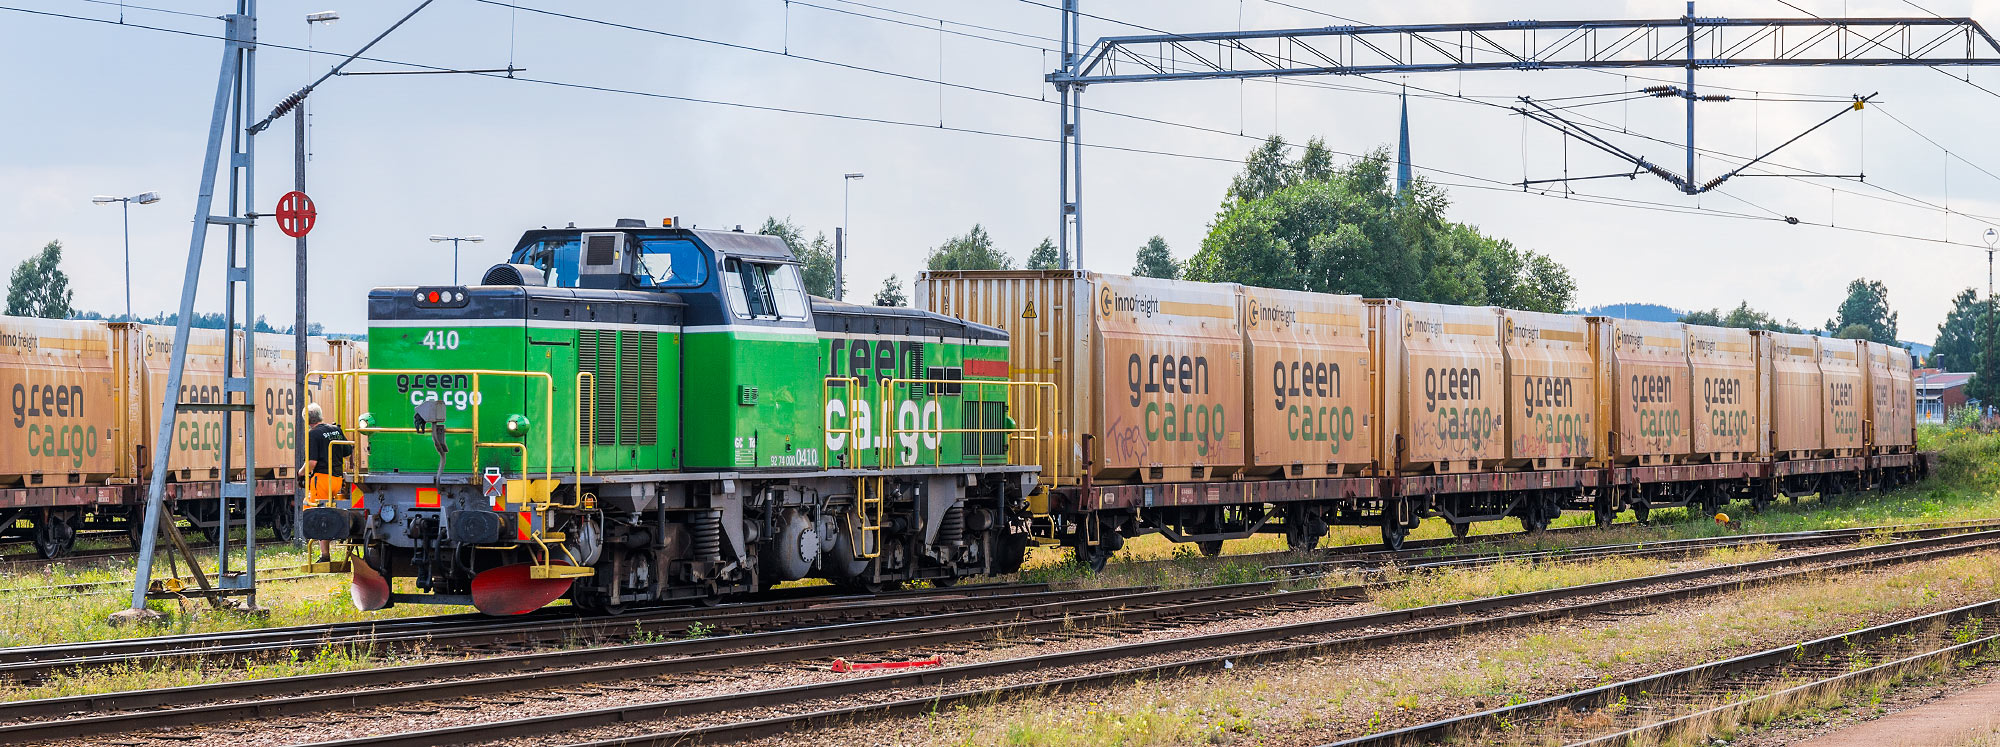 Bild: Green Cargo Td 410 växlar i Mora 2014